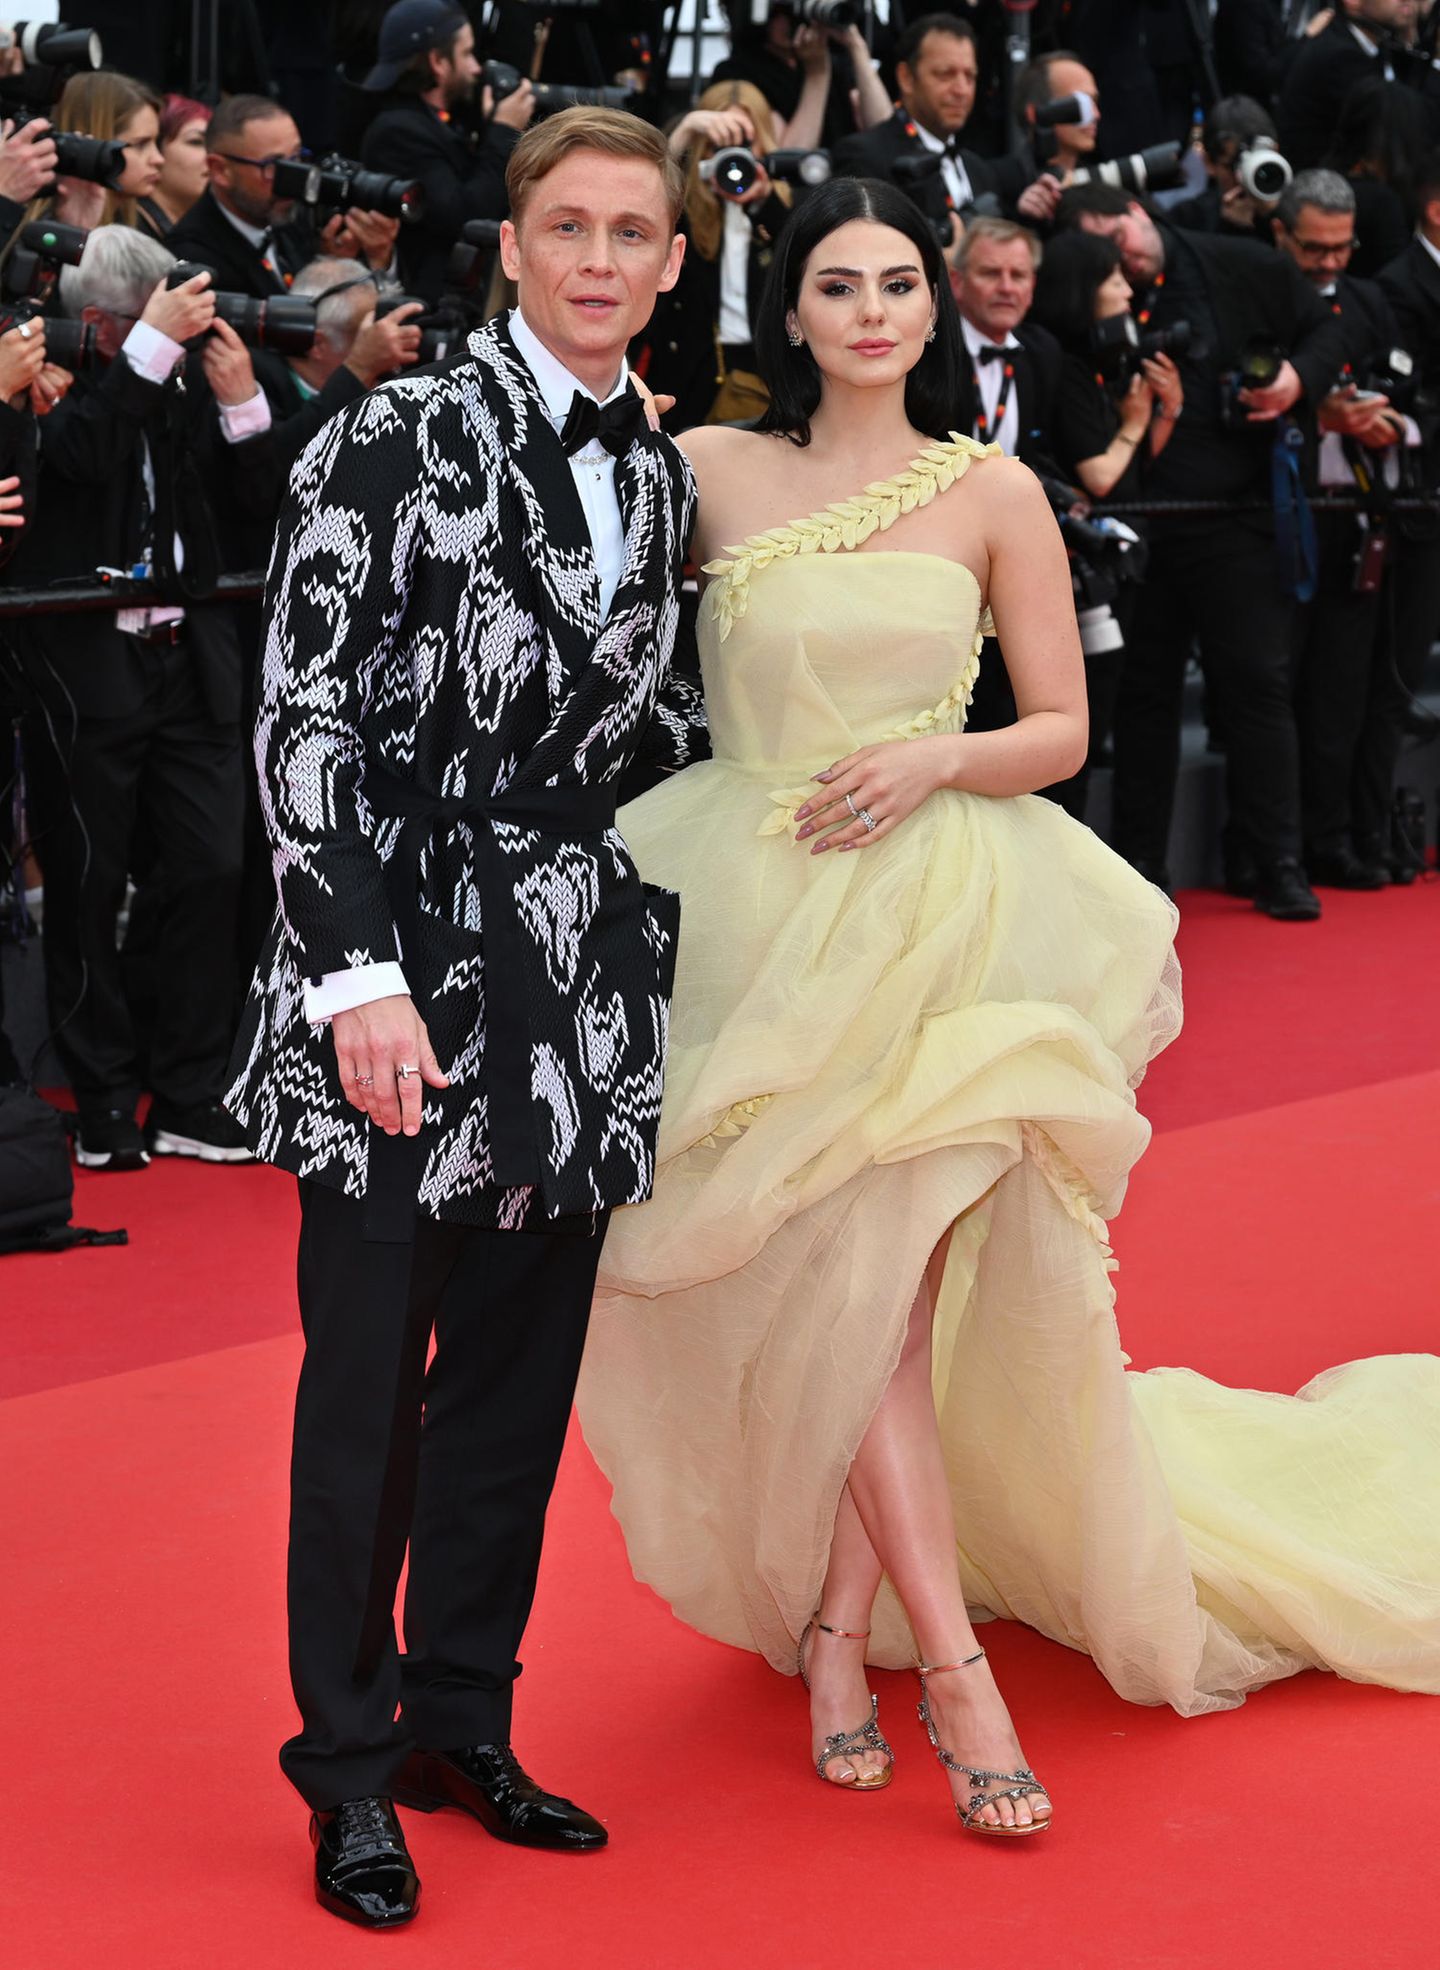 Matthias Schweighöfer und Ruby O. Fee gehören zu den stylischsten Star-Pärchen, und das stellen sie auch in Cannes mal wieder unter Beweis. Er extravagant im Jackett mit schwarz-weißer Strick-Optik, sie im zartgelben Couture-Dress mit Schleppe von Azzi & Osta.